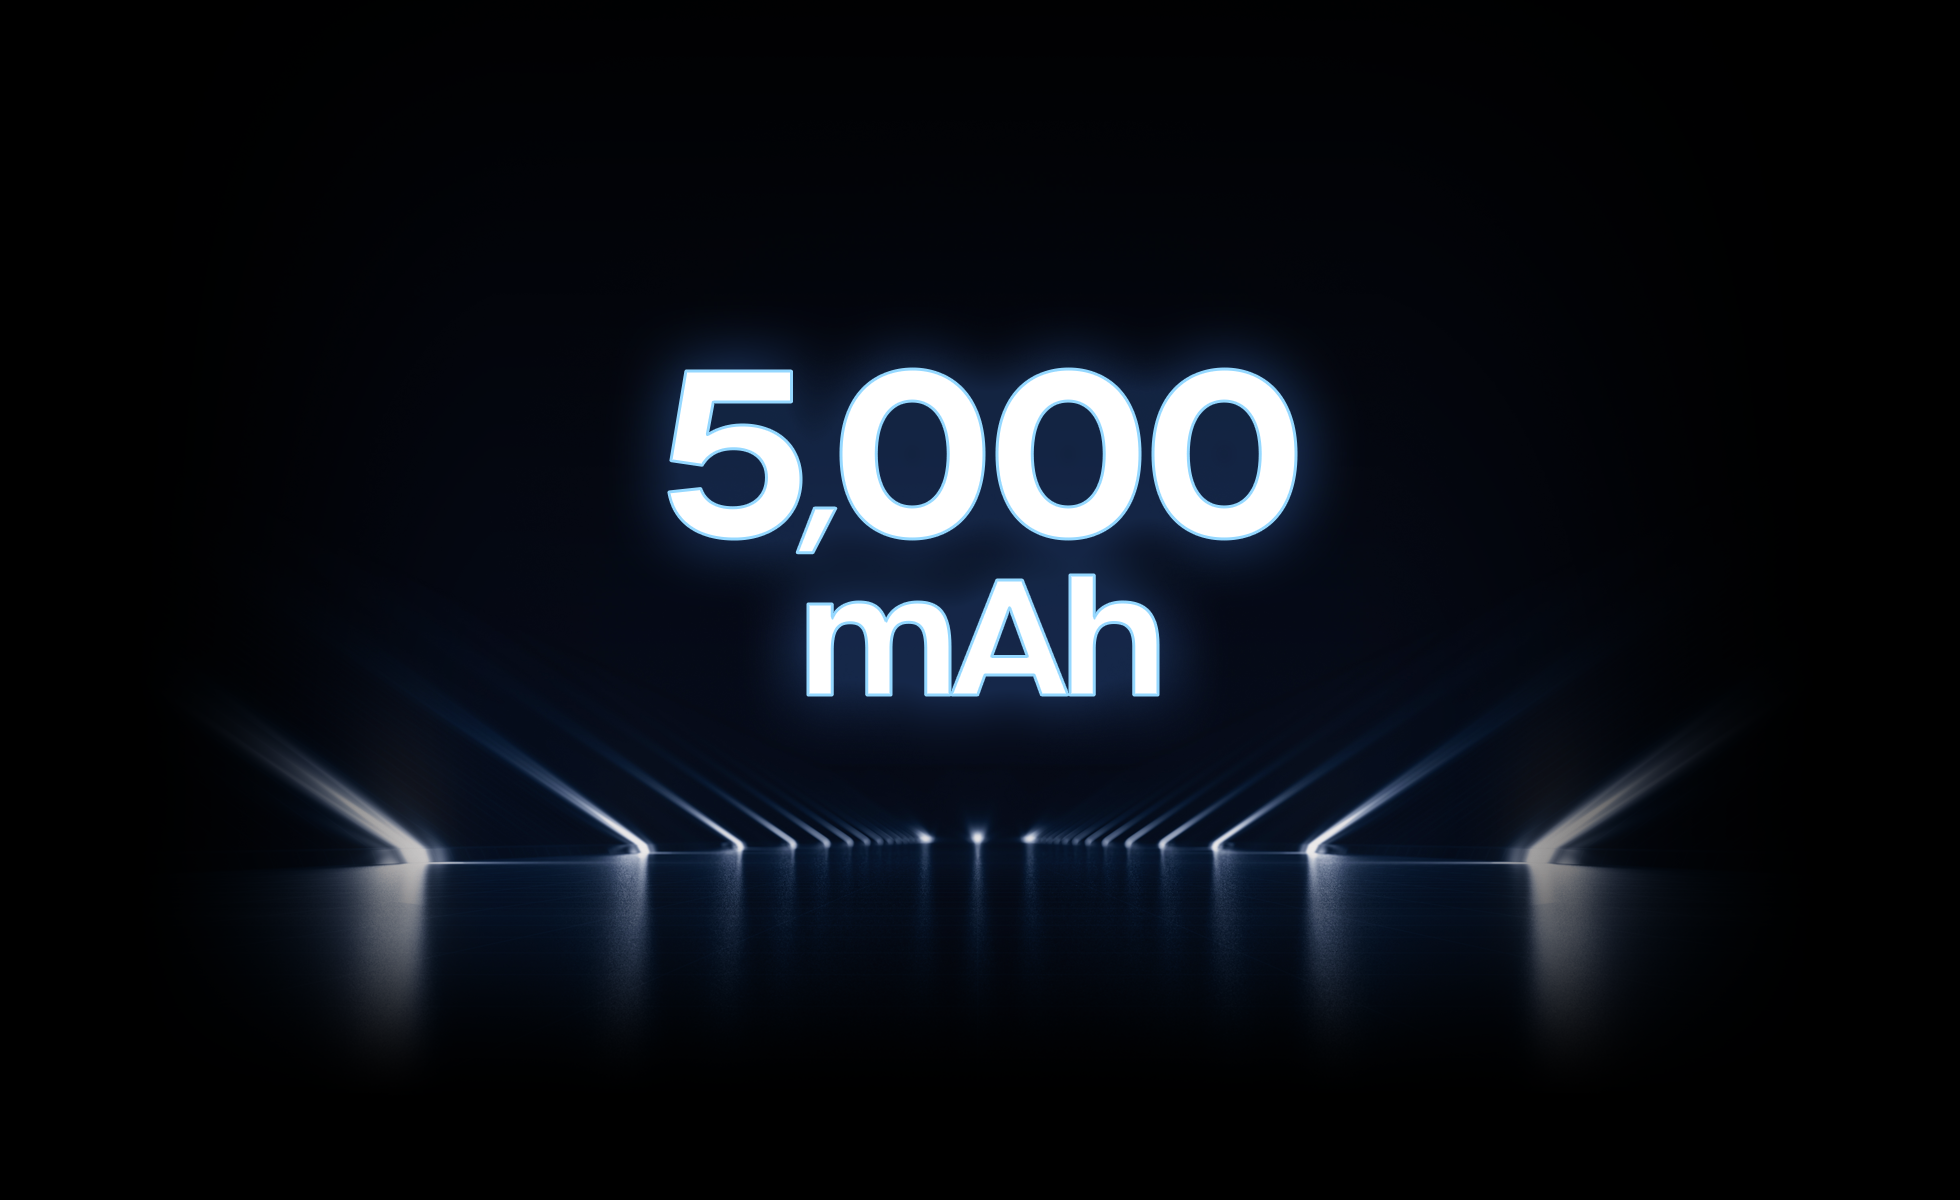 5,000 mAh